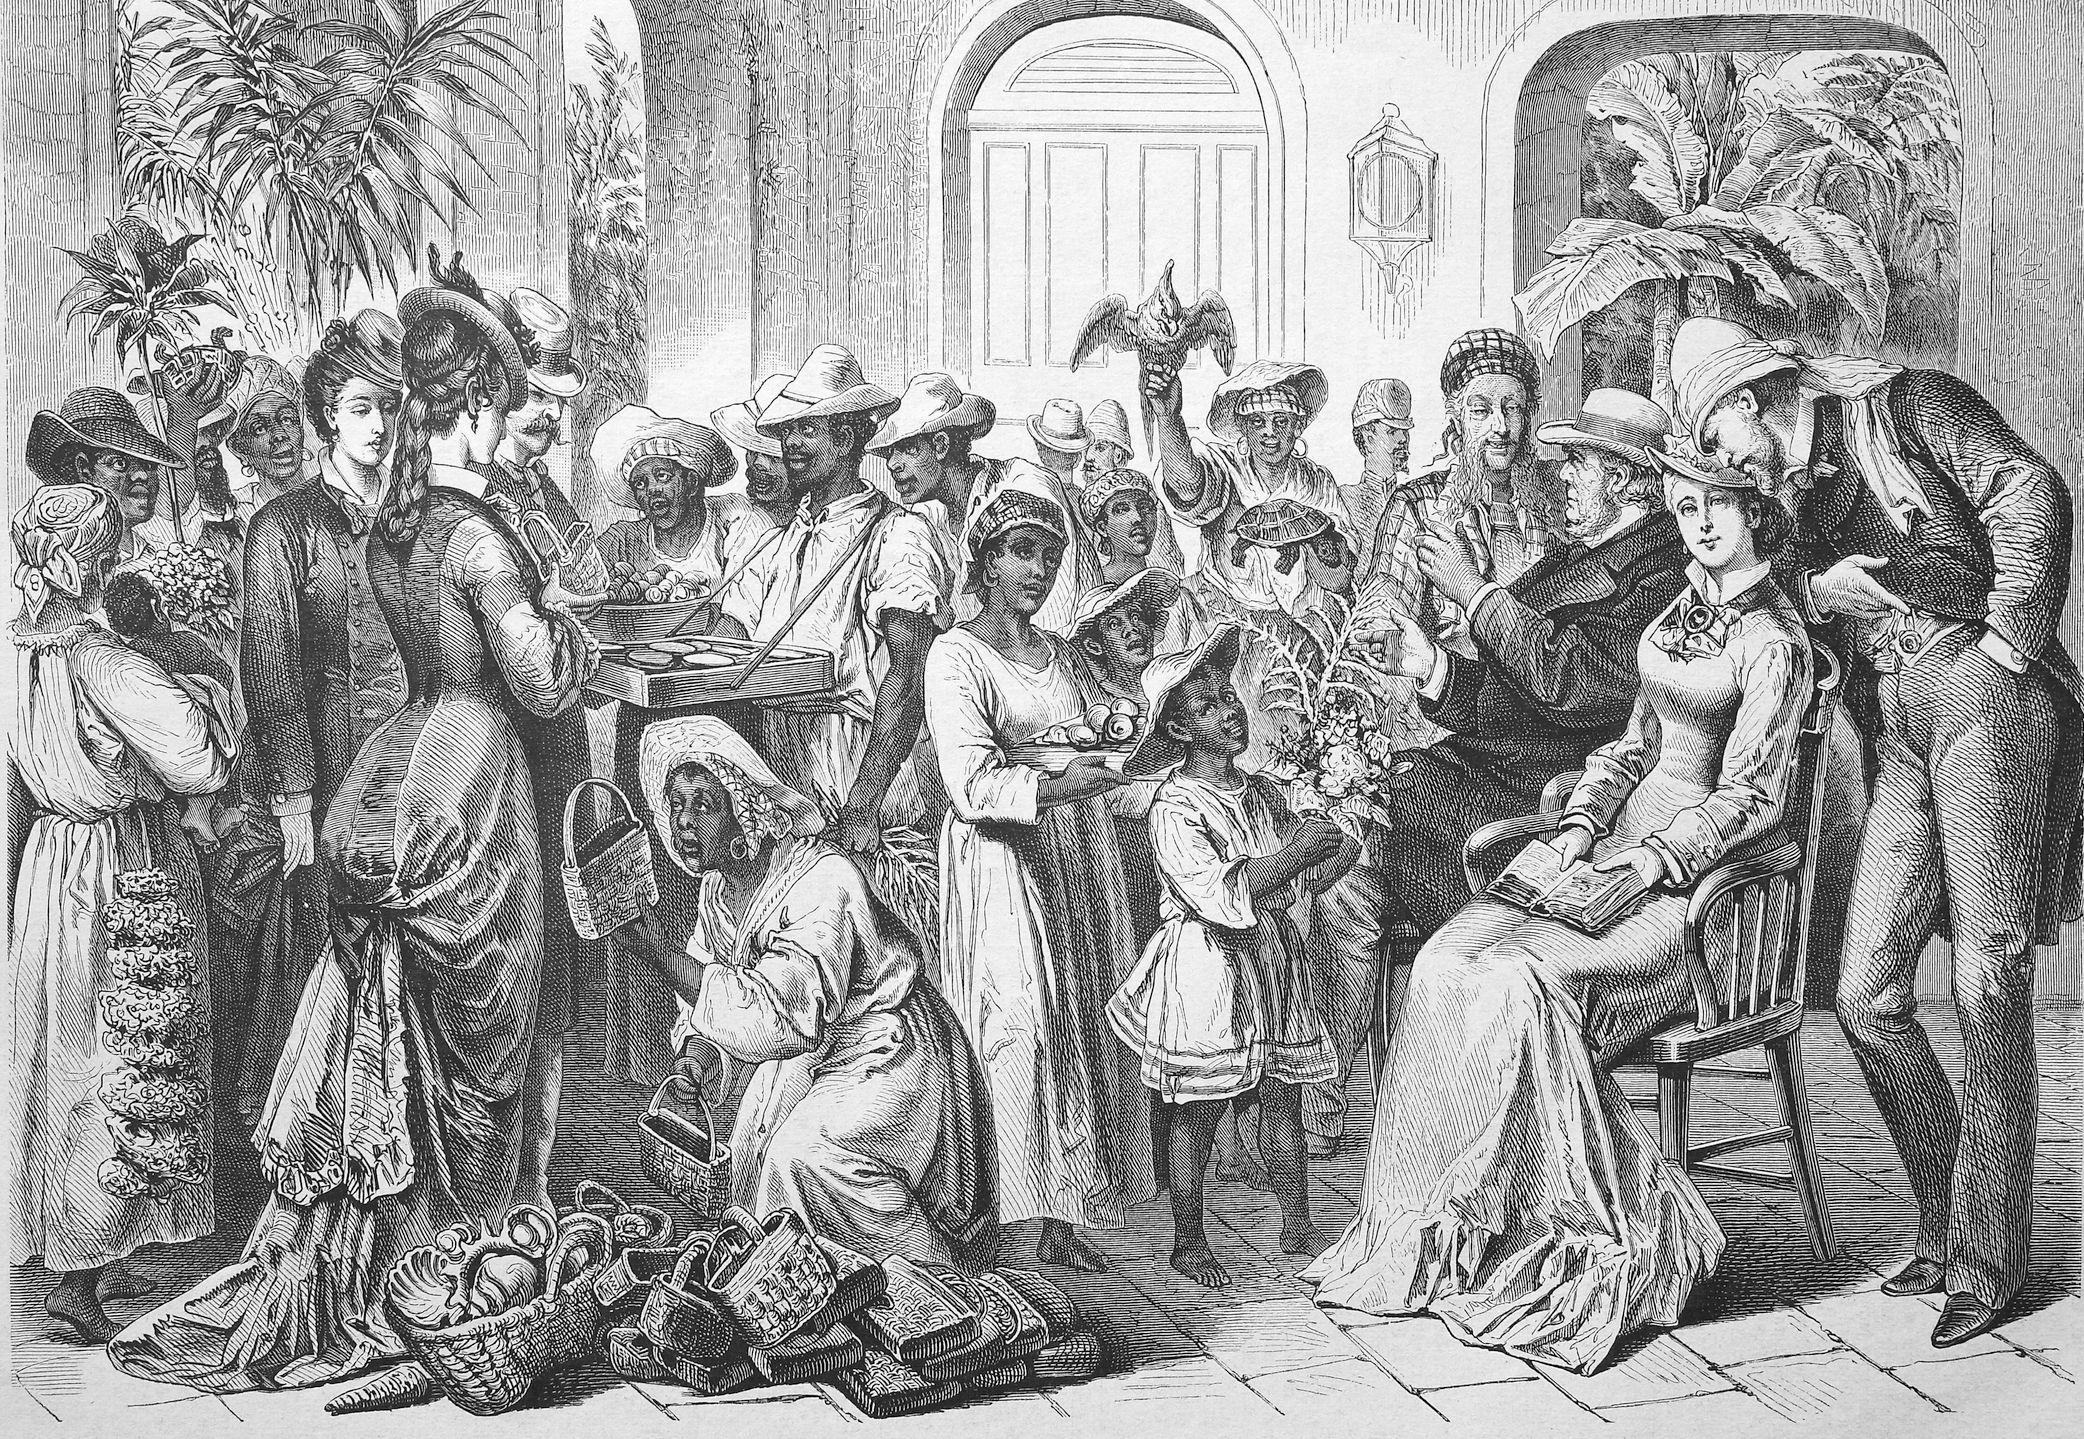 Ilustración de la aristocracia cubana del siglo XIX y sus esclavos.